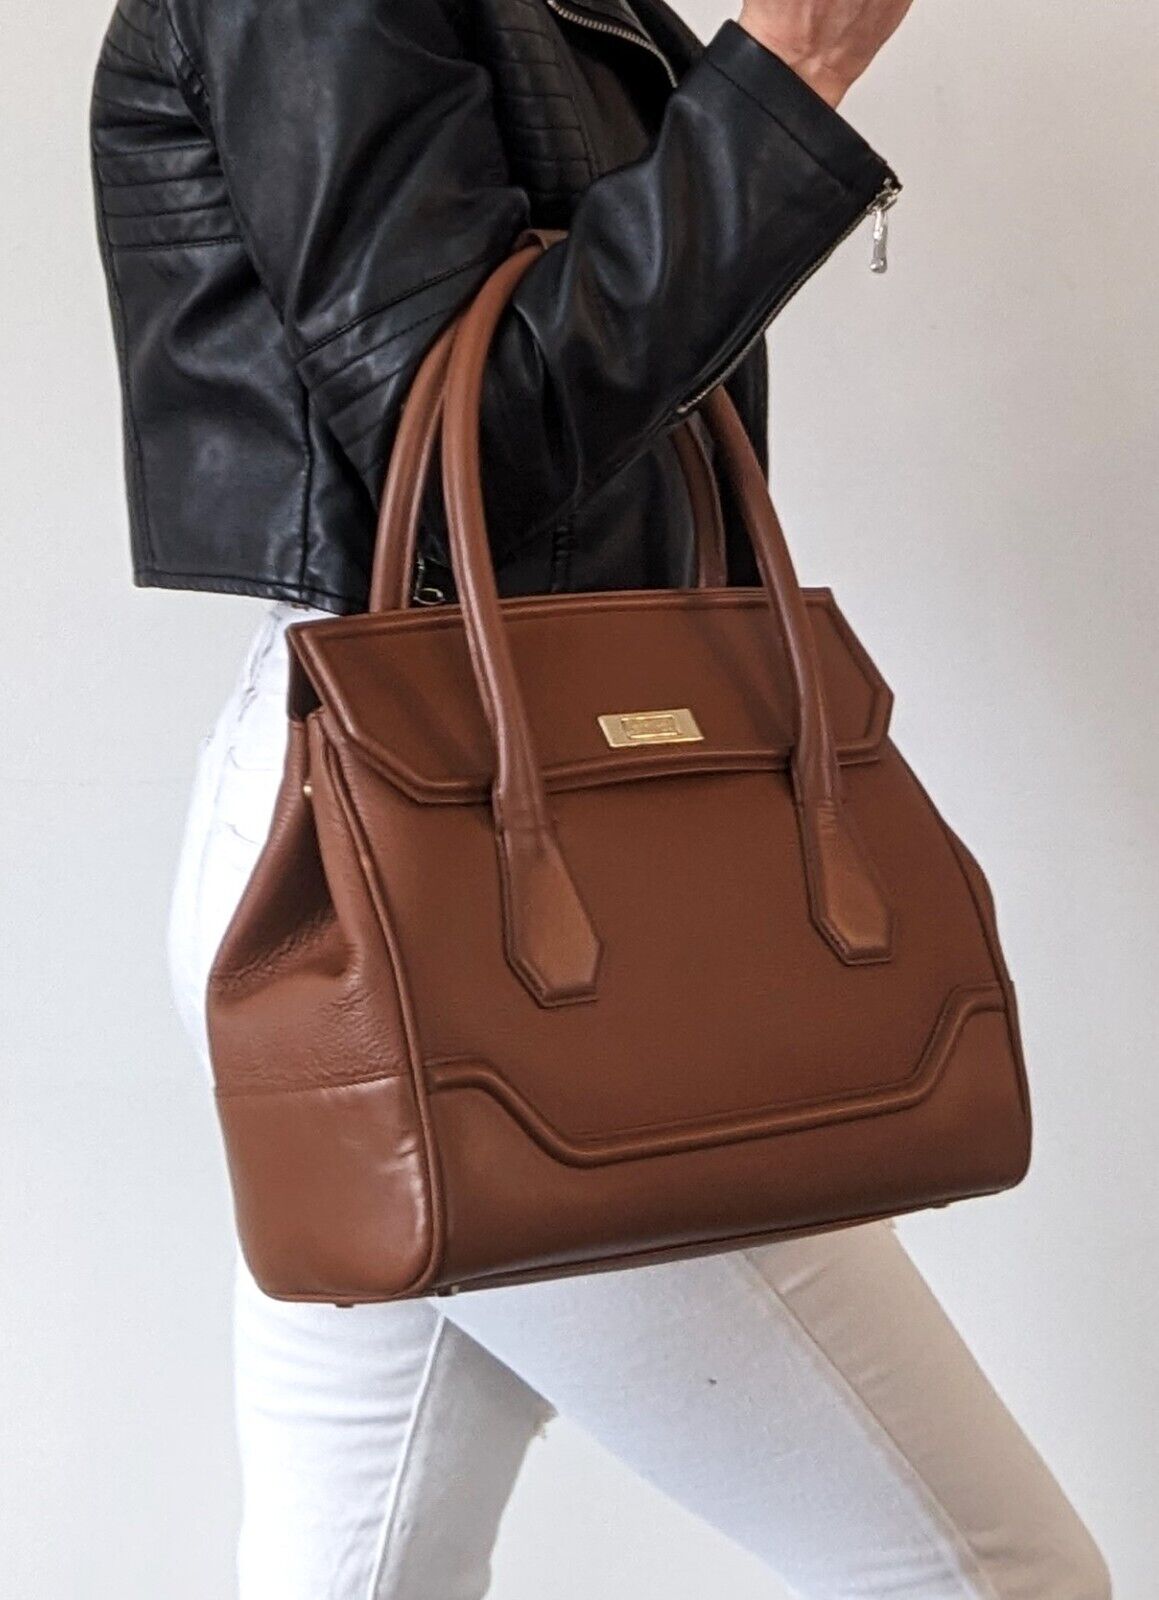 Leather Modalu Hemingway Tan Tote Bag RRP £199